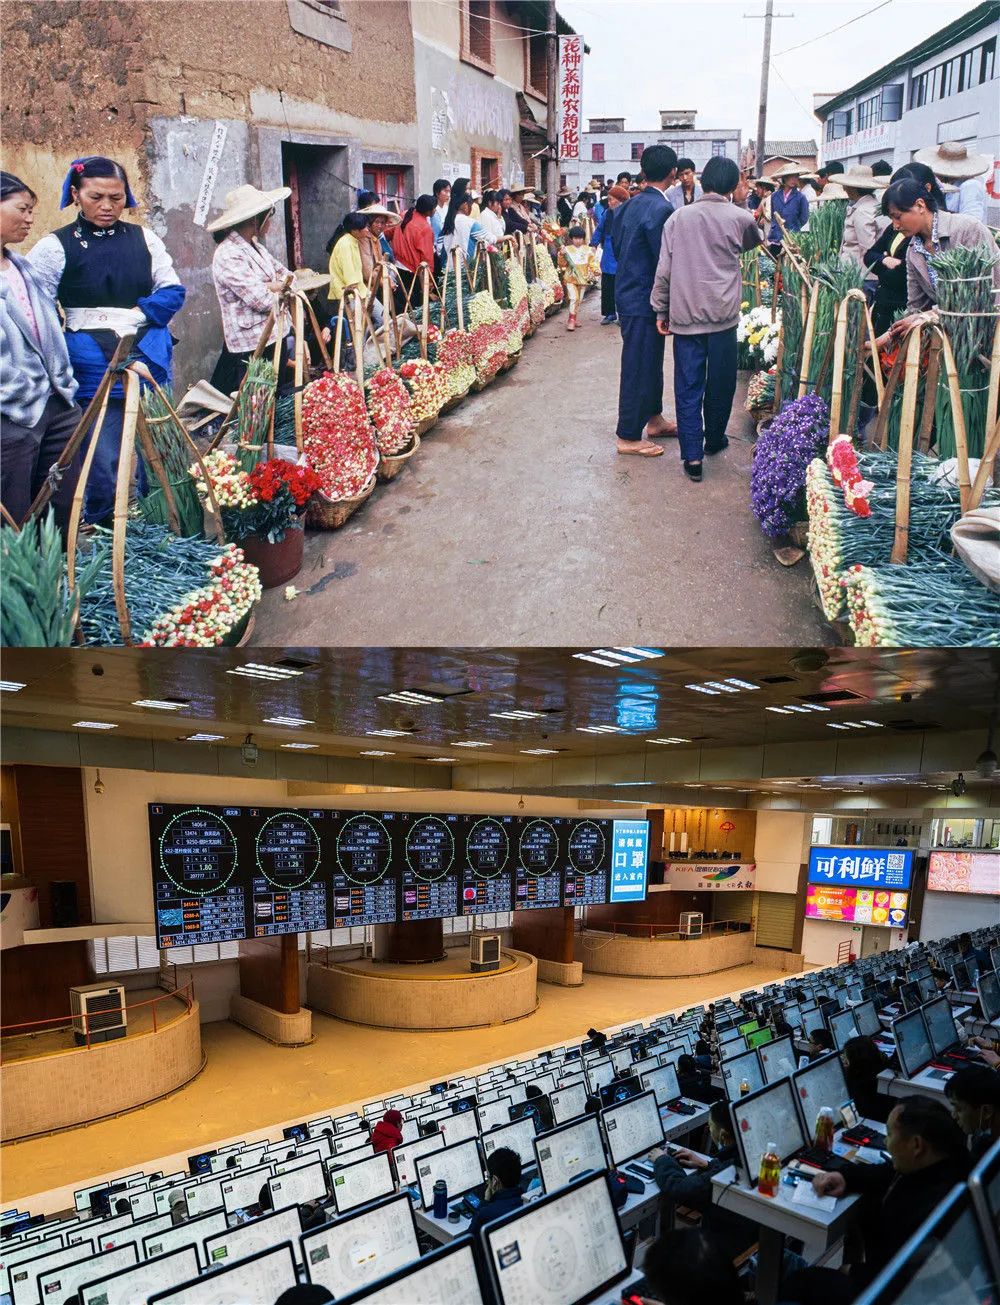 拼版照片：上图为1994年顾客在斗南村购买鲜花（资料照片）；下图为2022年1月21日，花商在昆明国际花卉拍卖交易中心内竞拍鲜花（王冠森 摄）